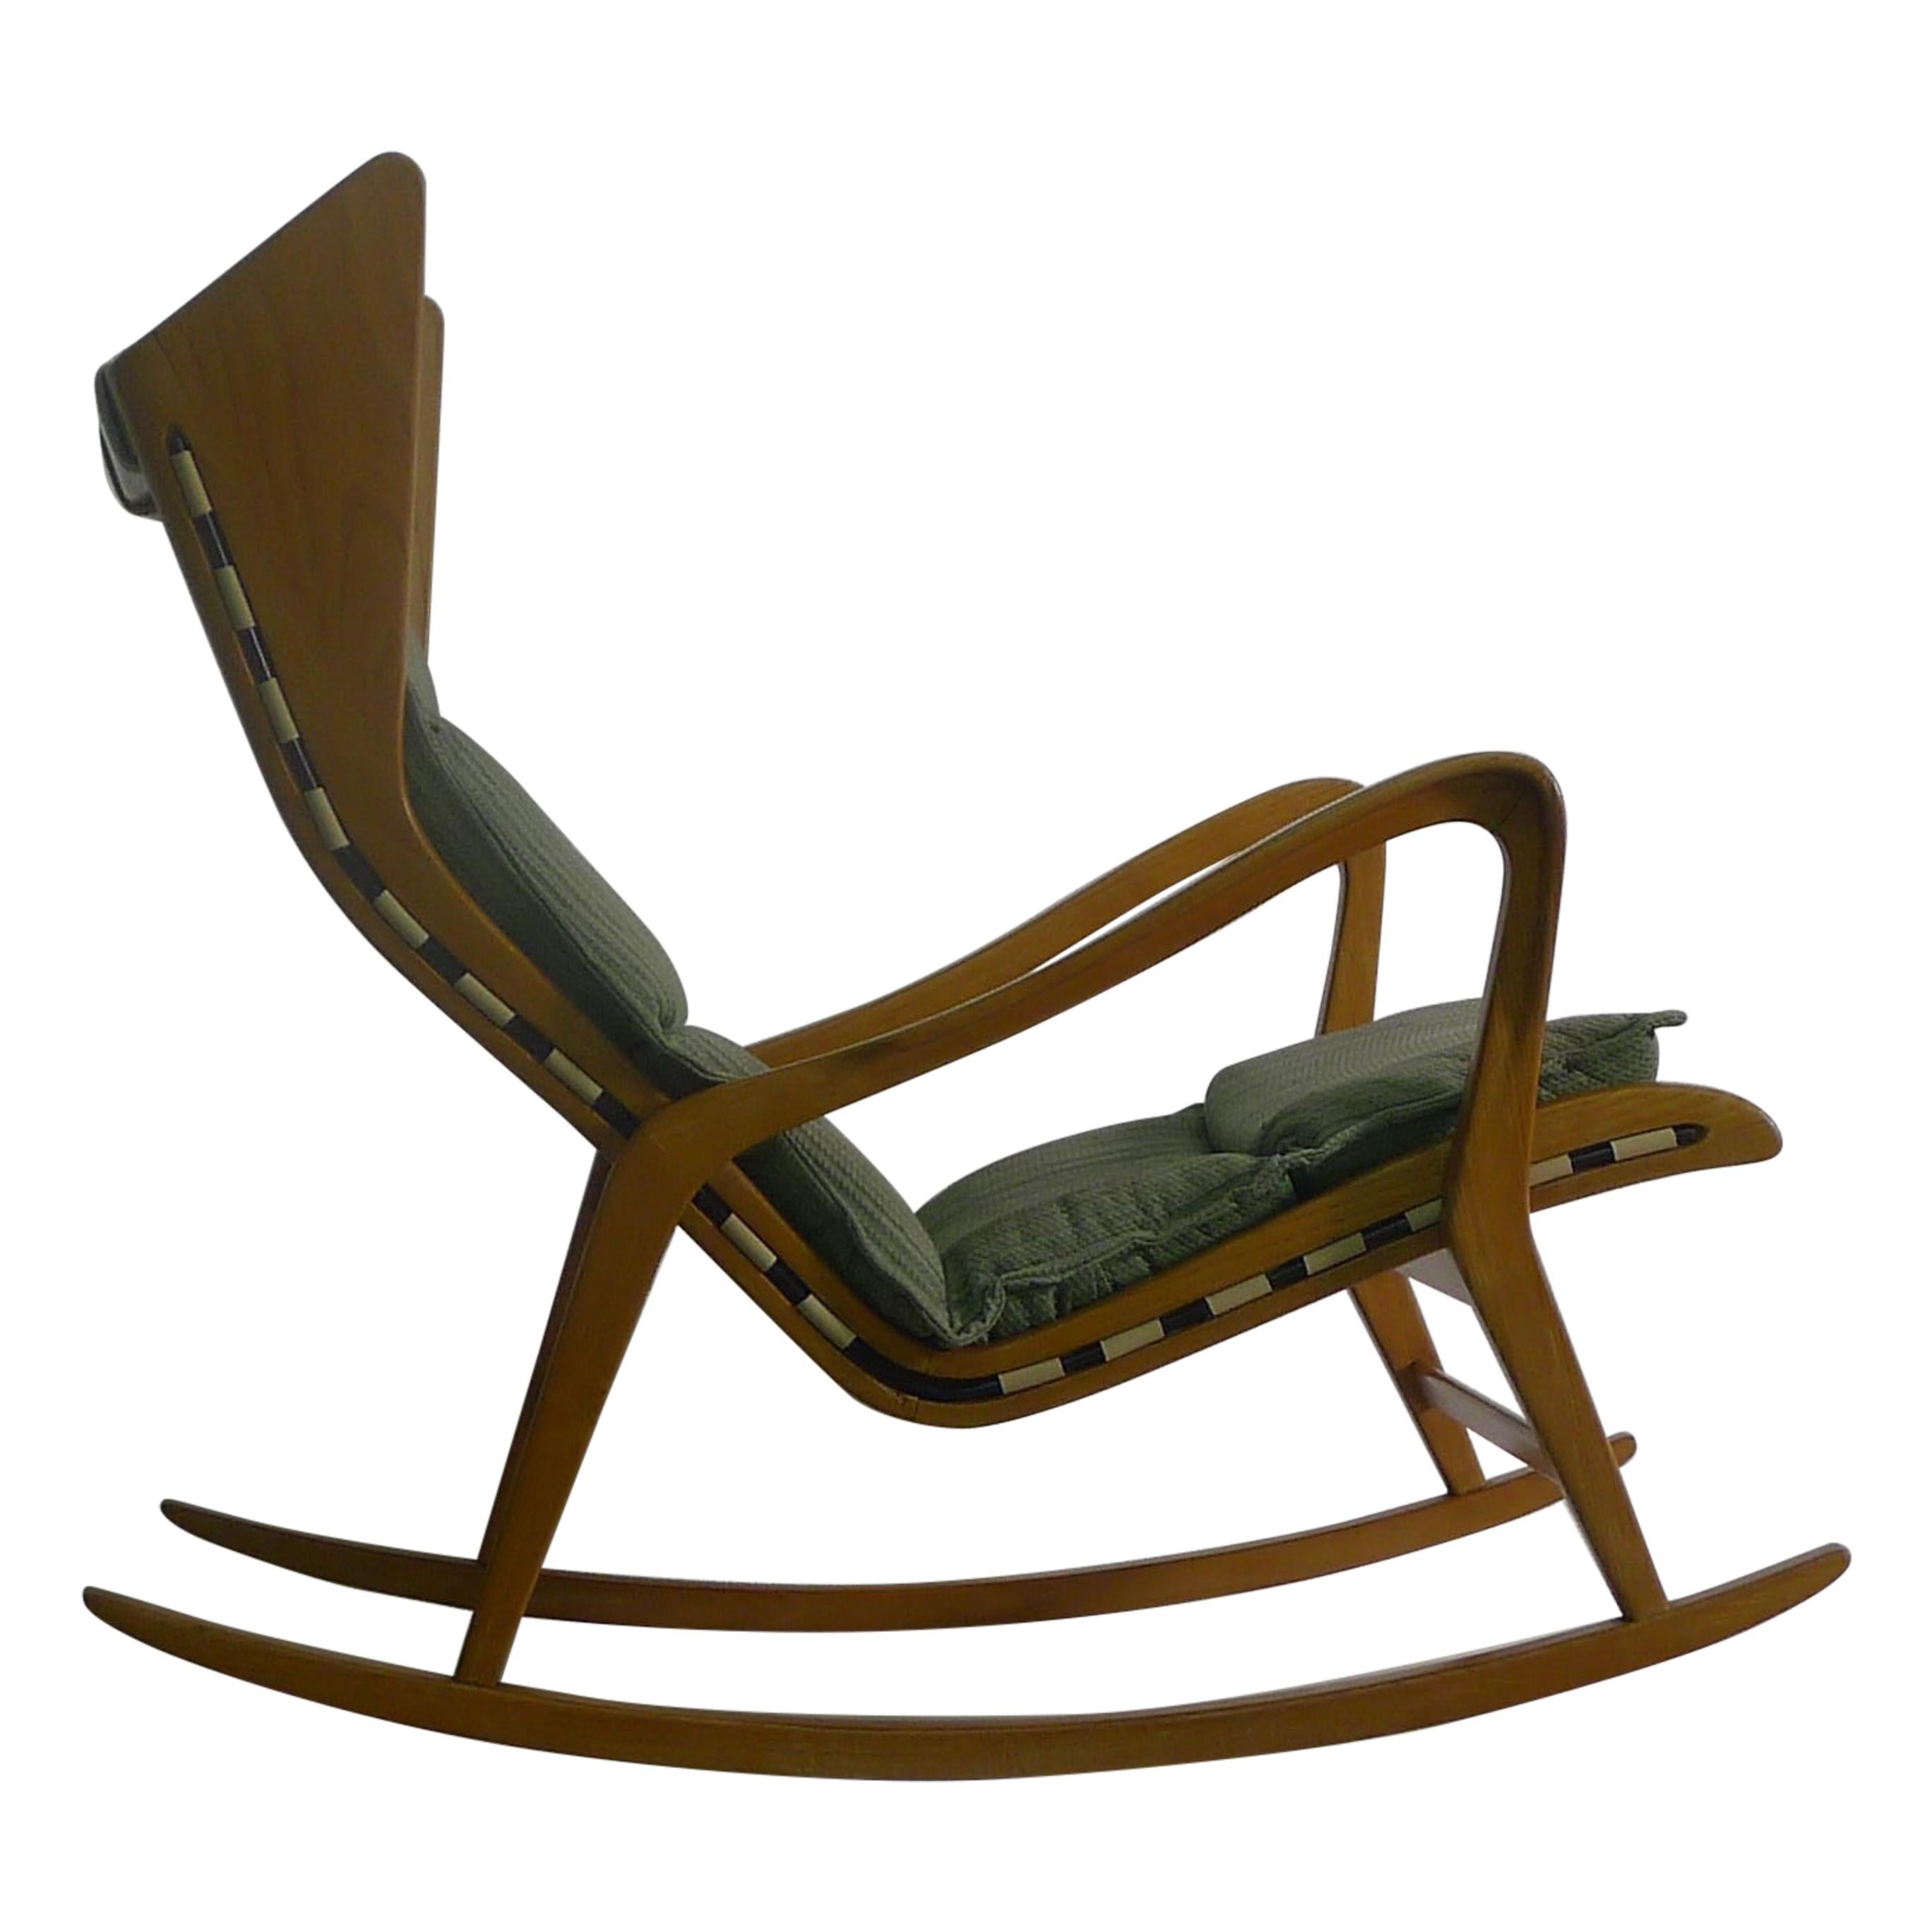 Studio Technica Cassina, Rocking Chair Model 572, circa 1955